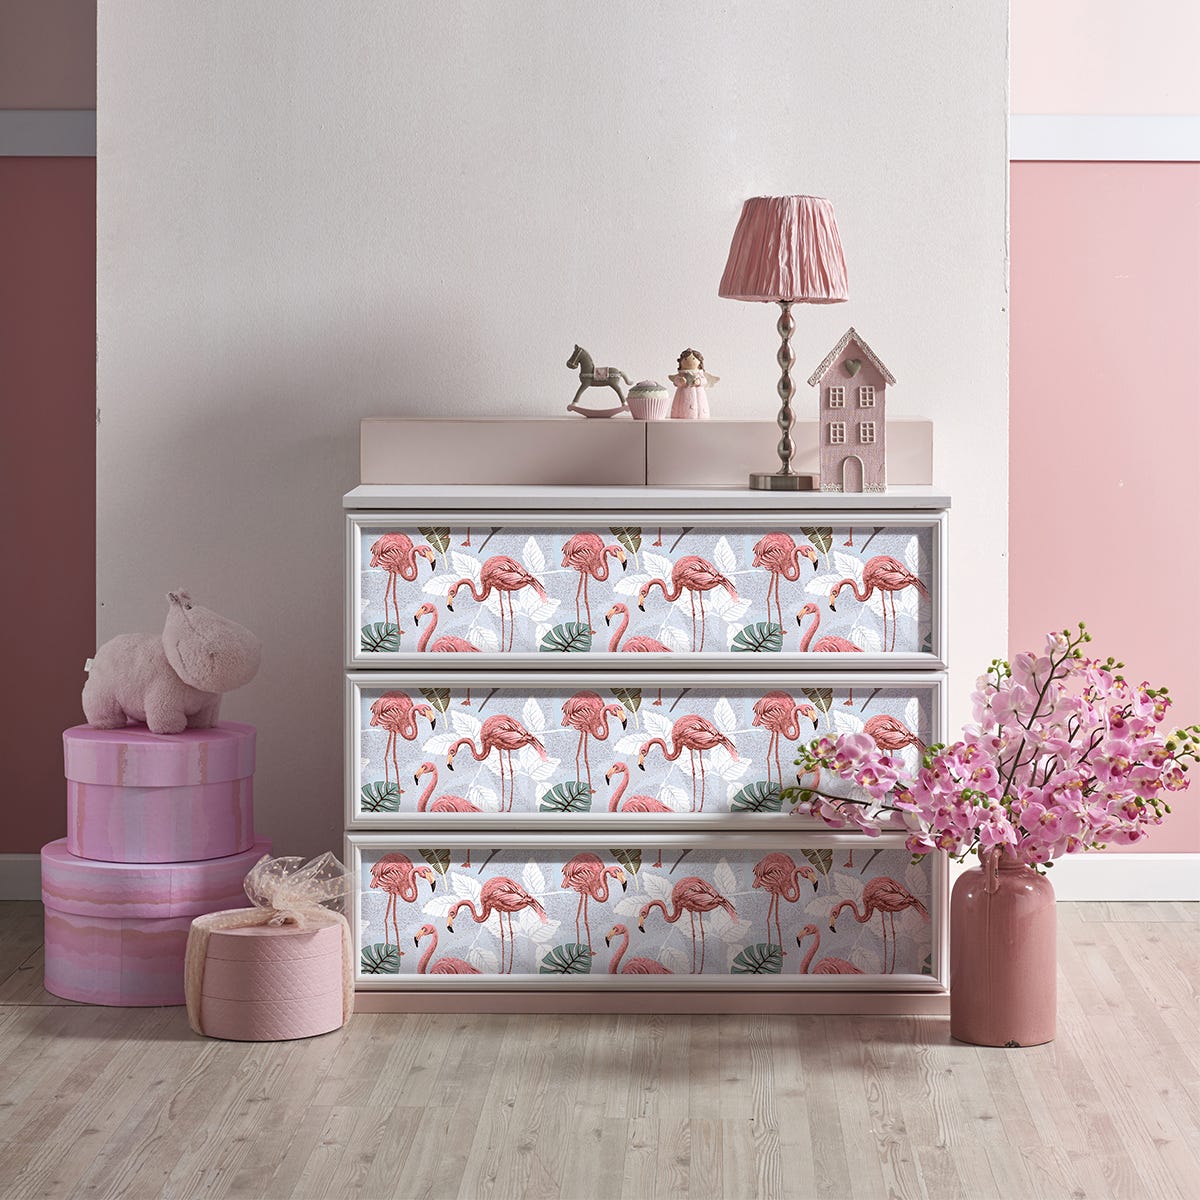 Vinilo mármol para muebles Rosa y blanco - adhesivo de pared -  revestimiento sticker mural decorativo - 60x90cm